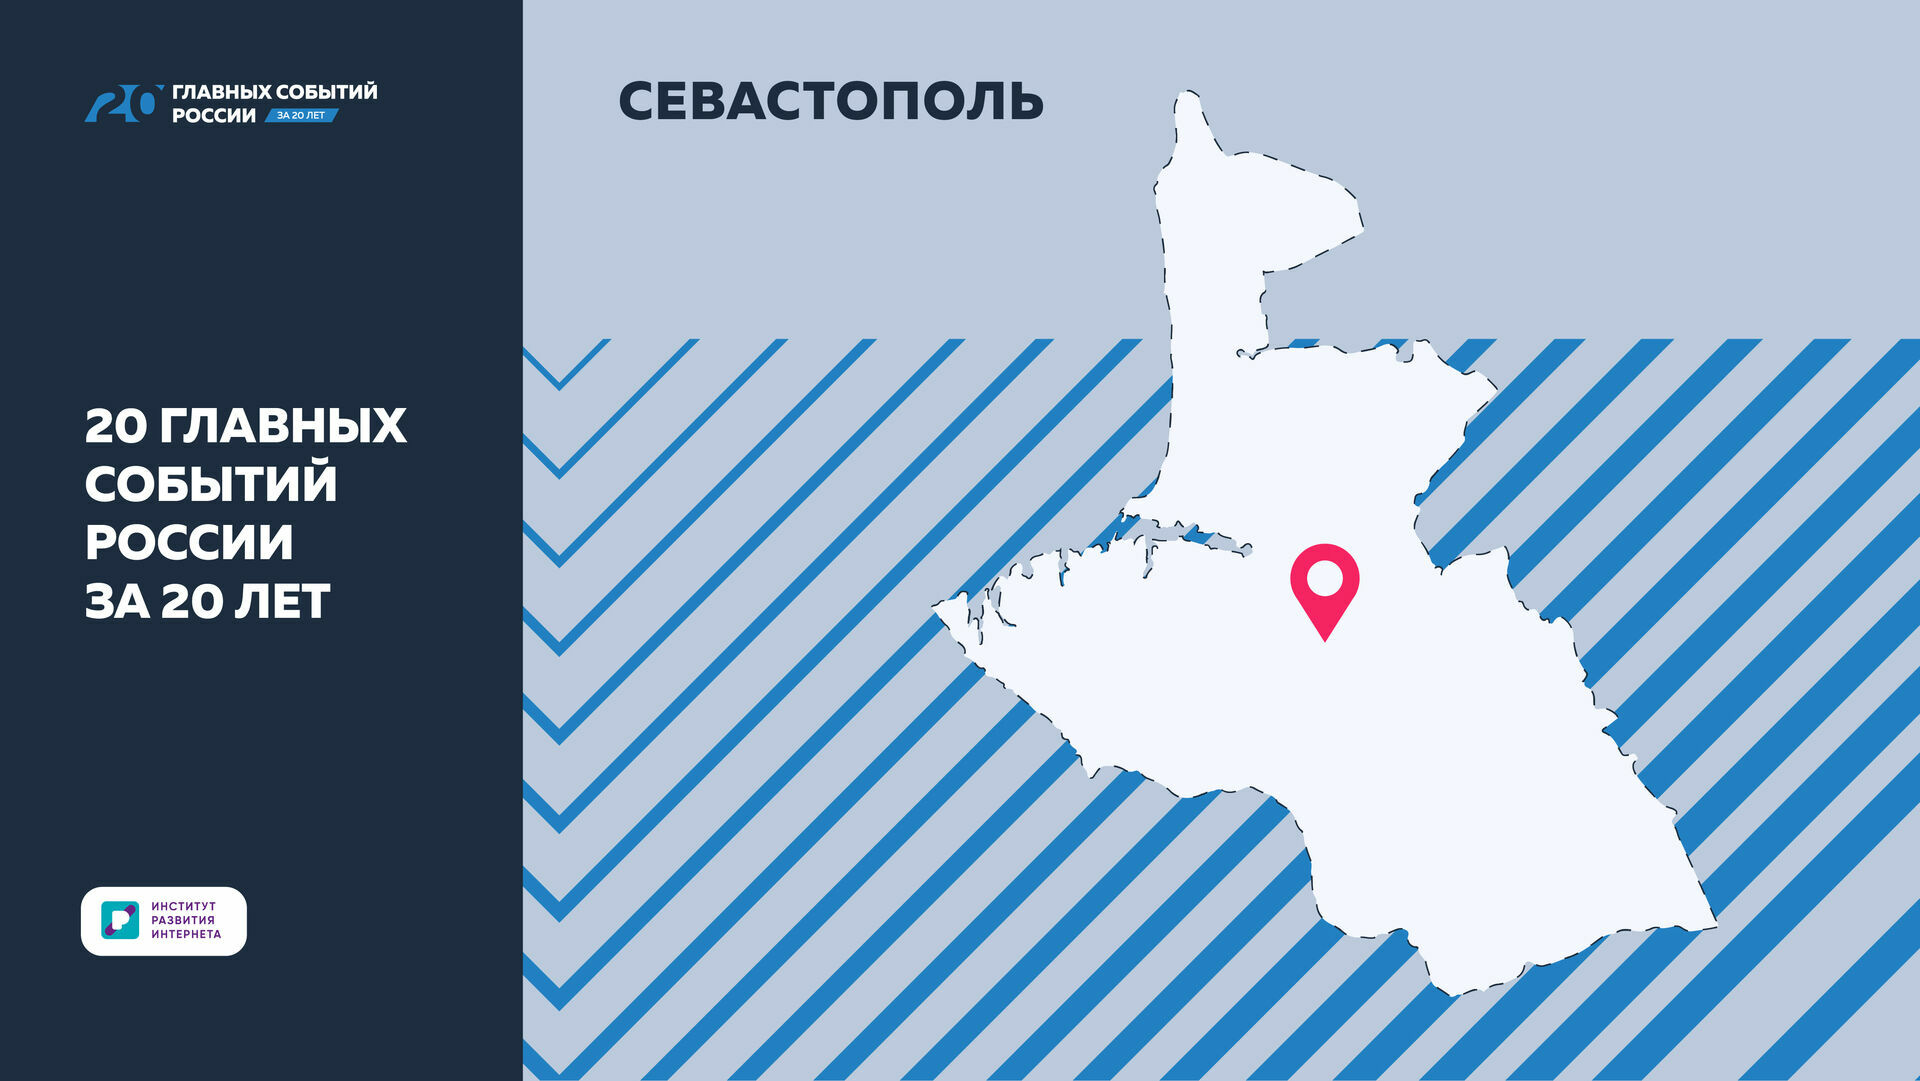 «20 главных событий России за 20 лет»: открытие сосудистого центра в Севастополе